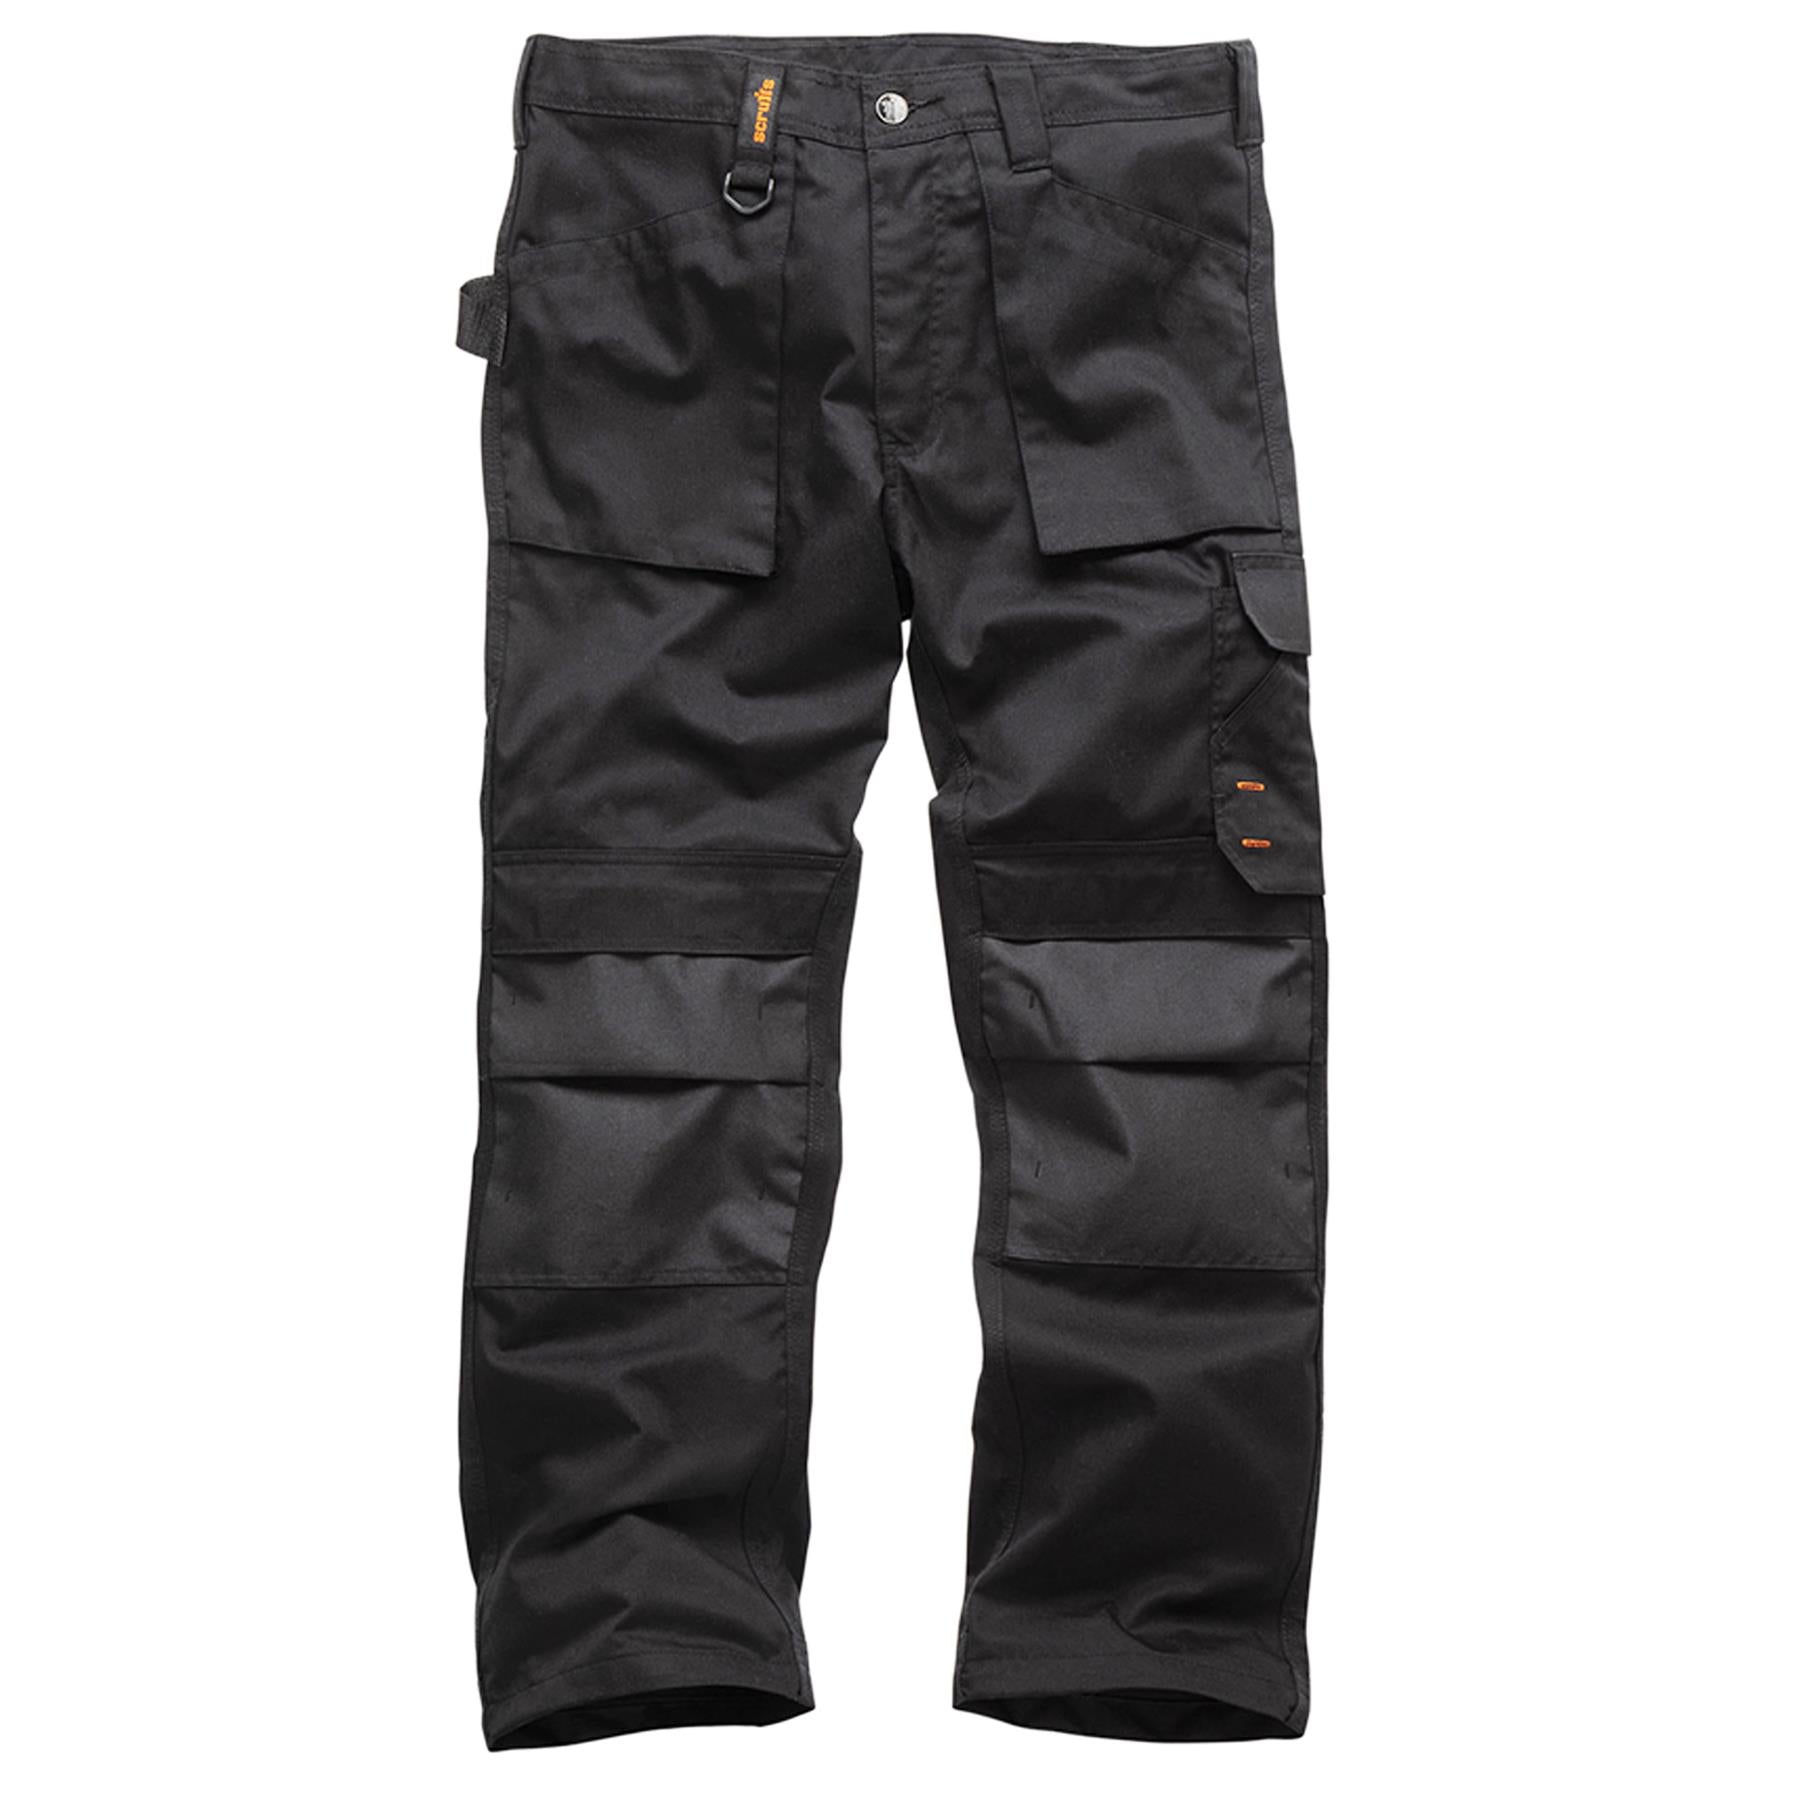 Scruffs Worker Plus Trouser | Trade Hard Wearing Work Trouser | Black